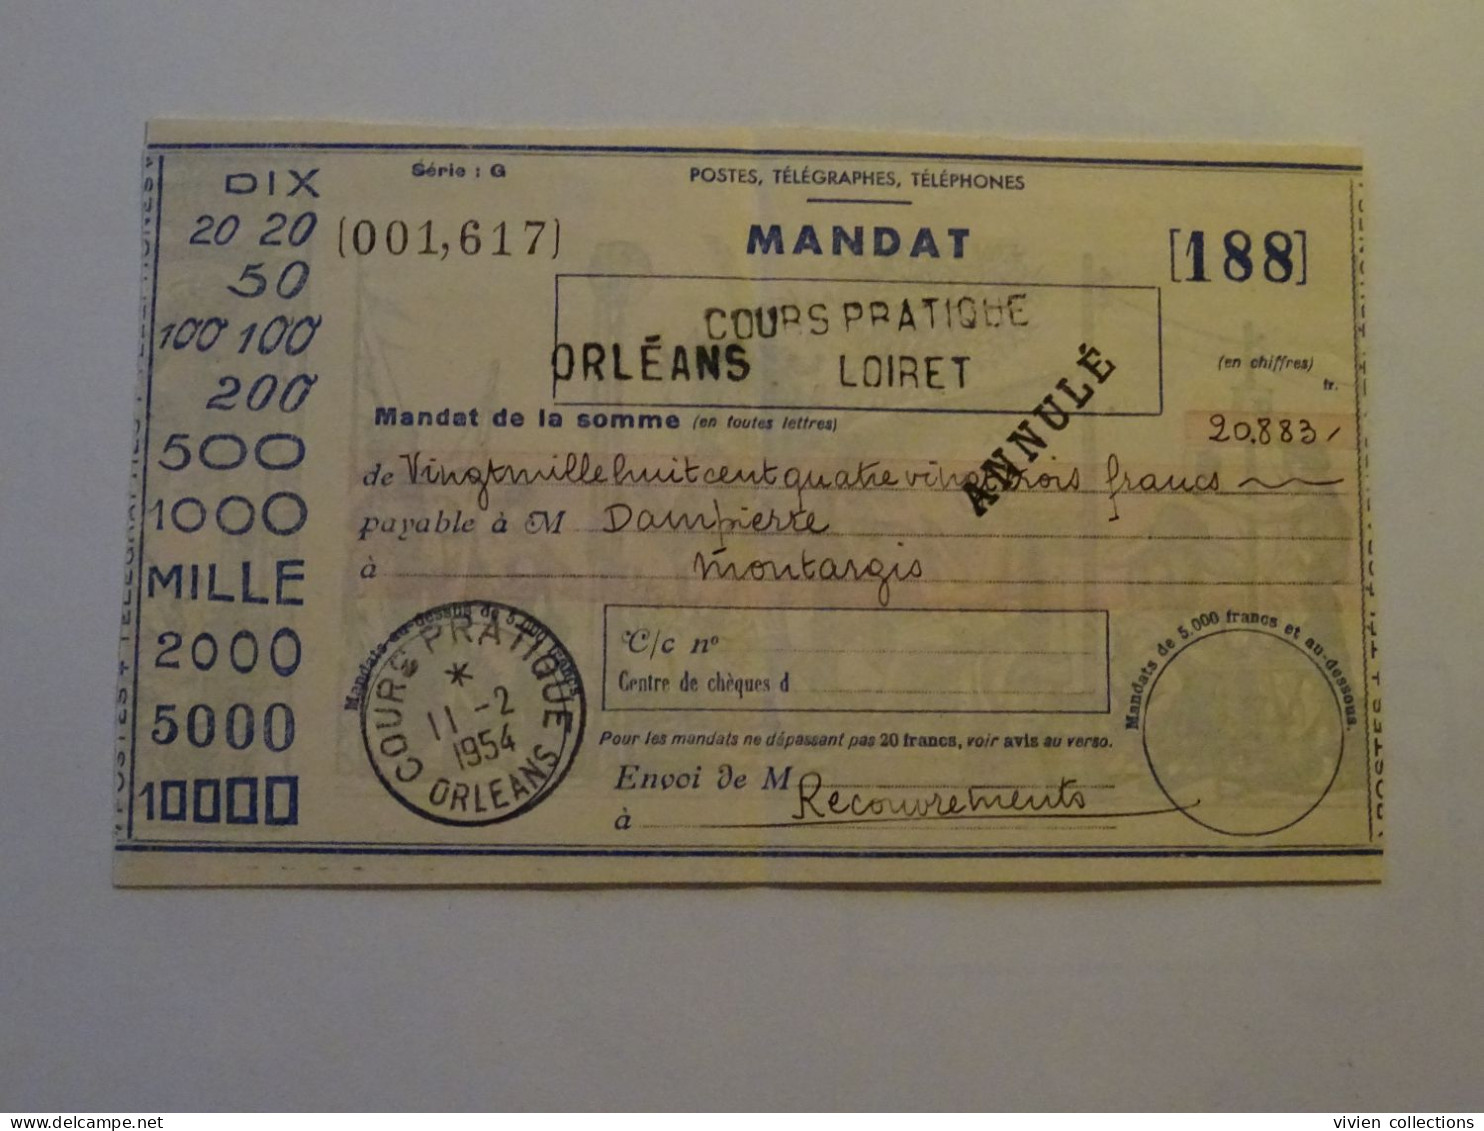 France cours d'instruction cours pratique Orléans Loiret 1954 service des recouvrements mandat annulé Montargis